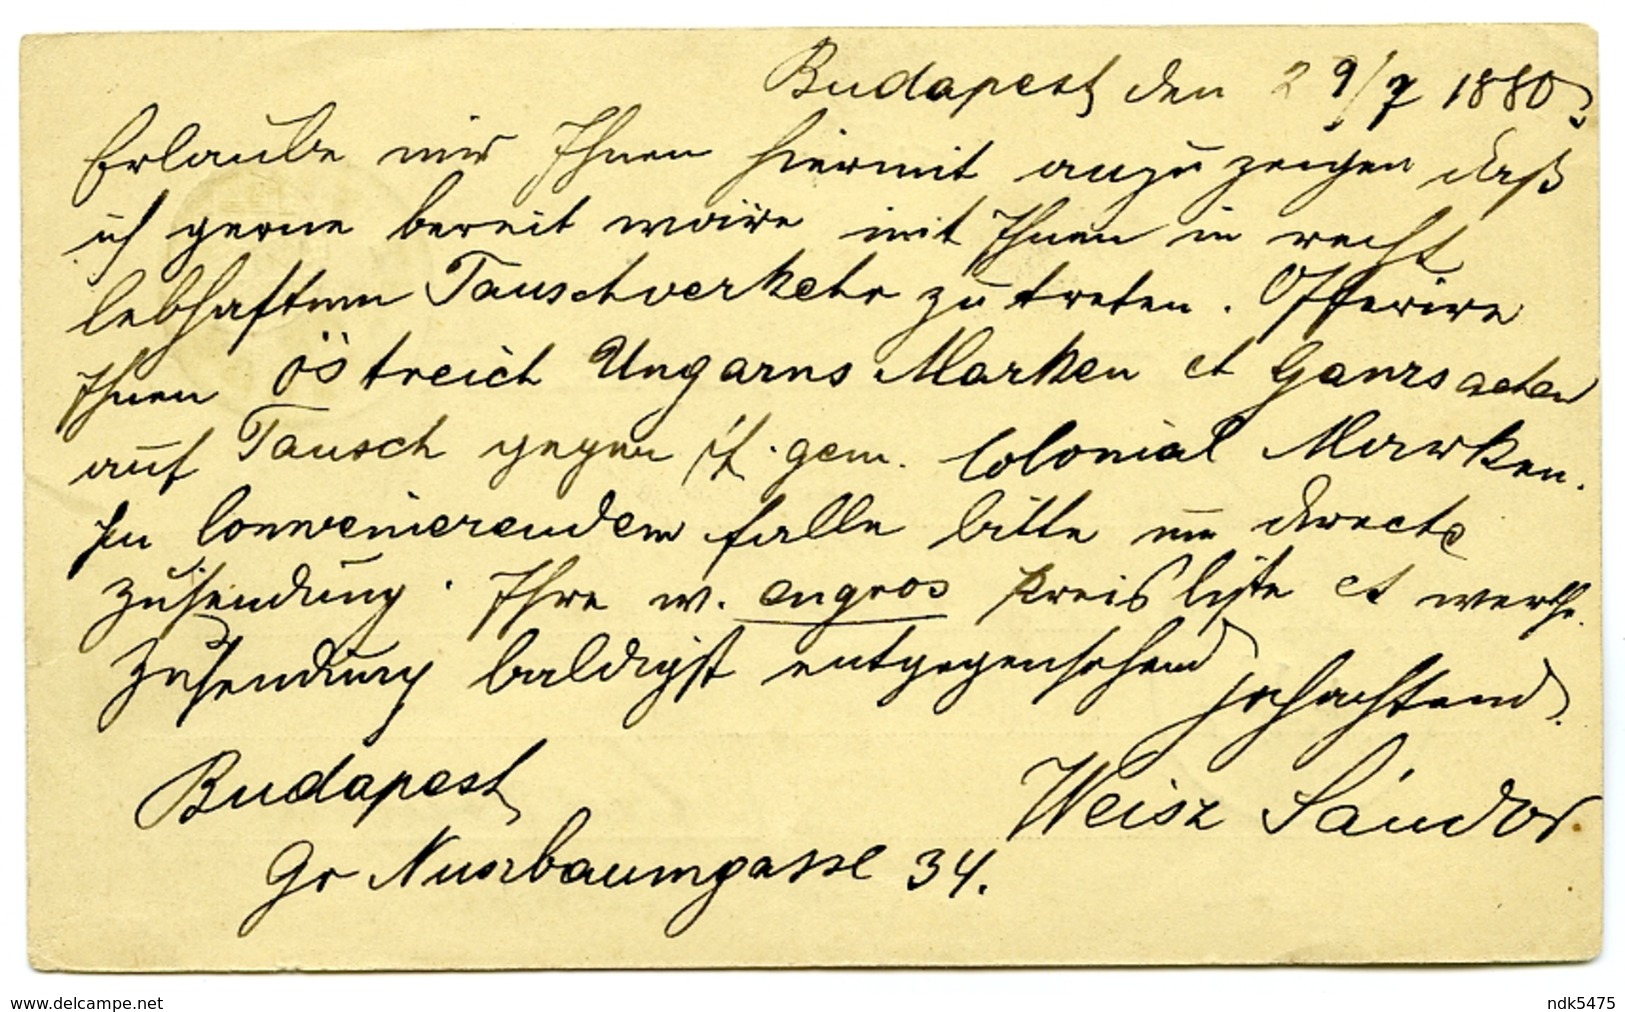 HUNGARY : MAGY KIR POSTAL / LEVELEZO-LAP : BUDAPEST, BAUMGASSE - STRASSBURG / STRASBOURG, 1880 (WEISZ, SCHREINER) - Postal Stationery